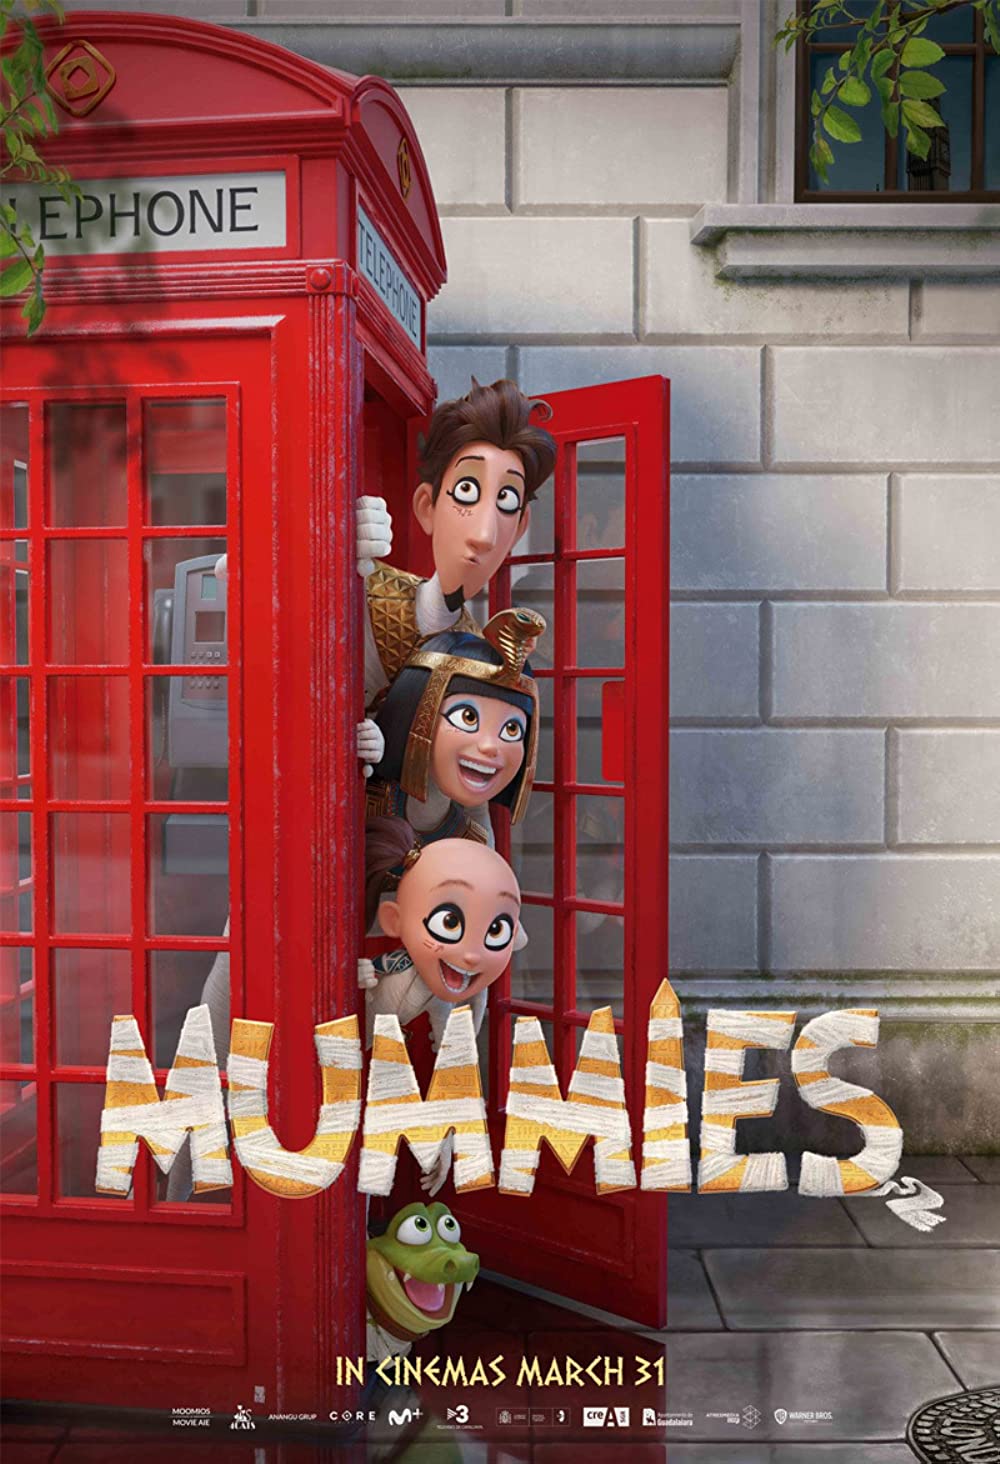 Mummies (2023) มัมมี่ส์